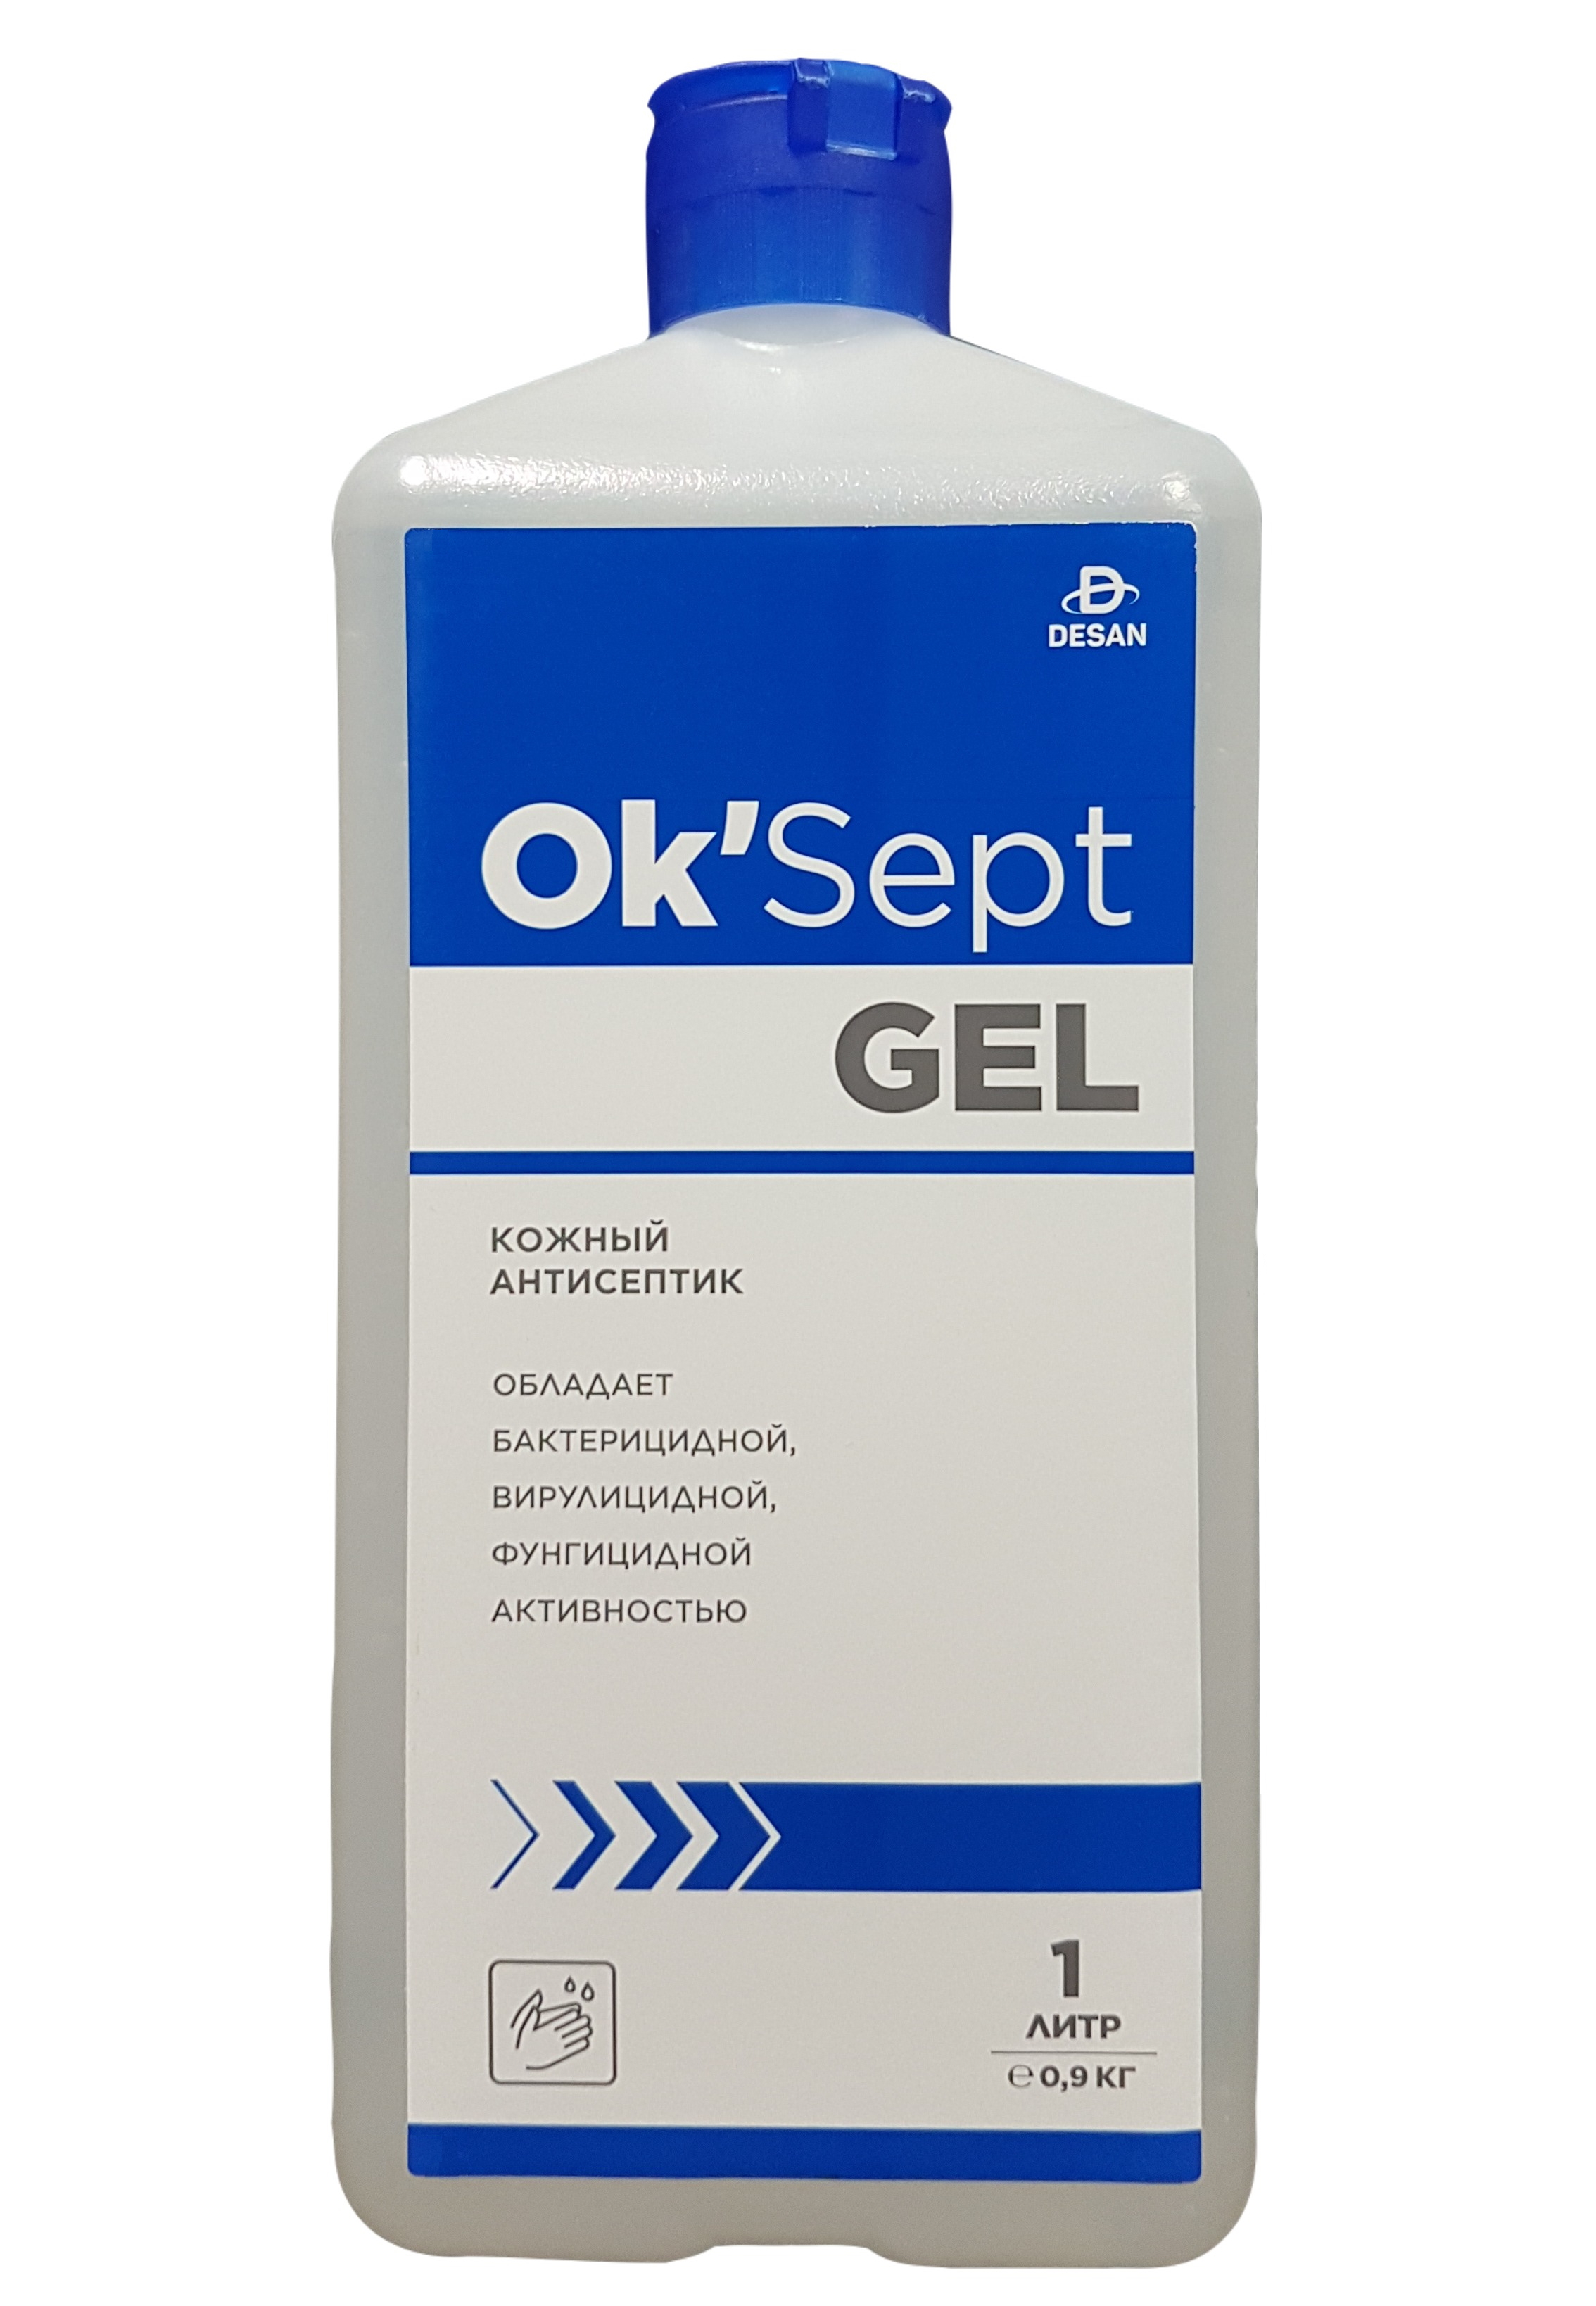 Антисептическое средство OK’Sept gel (ОК'Септ гель) 1 литр антисептическое средство астрадез септ 750 мл спрей